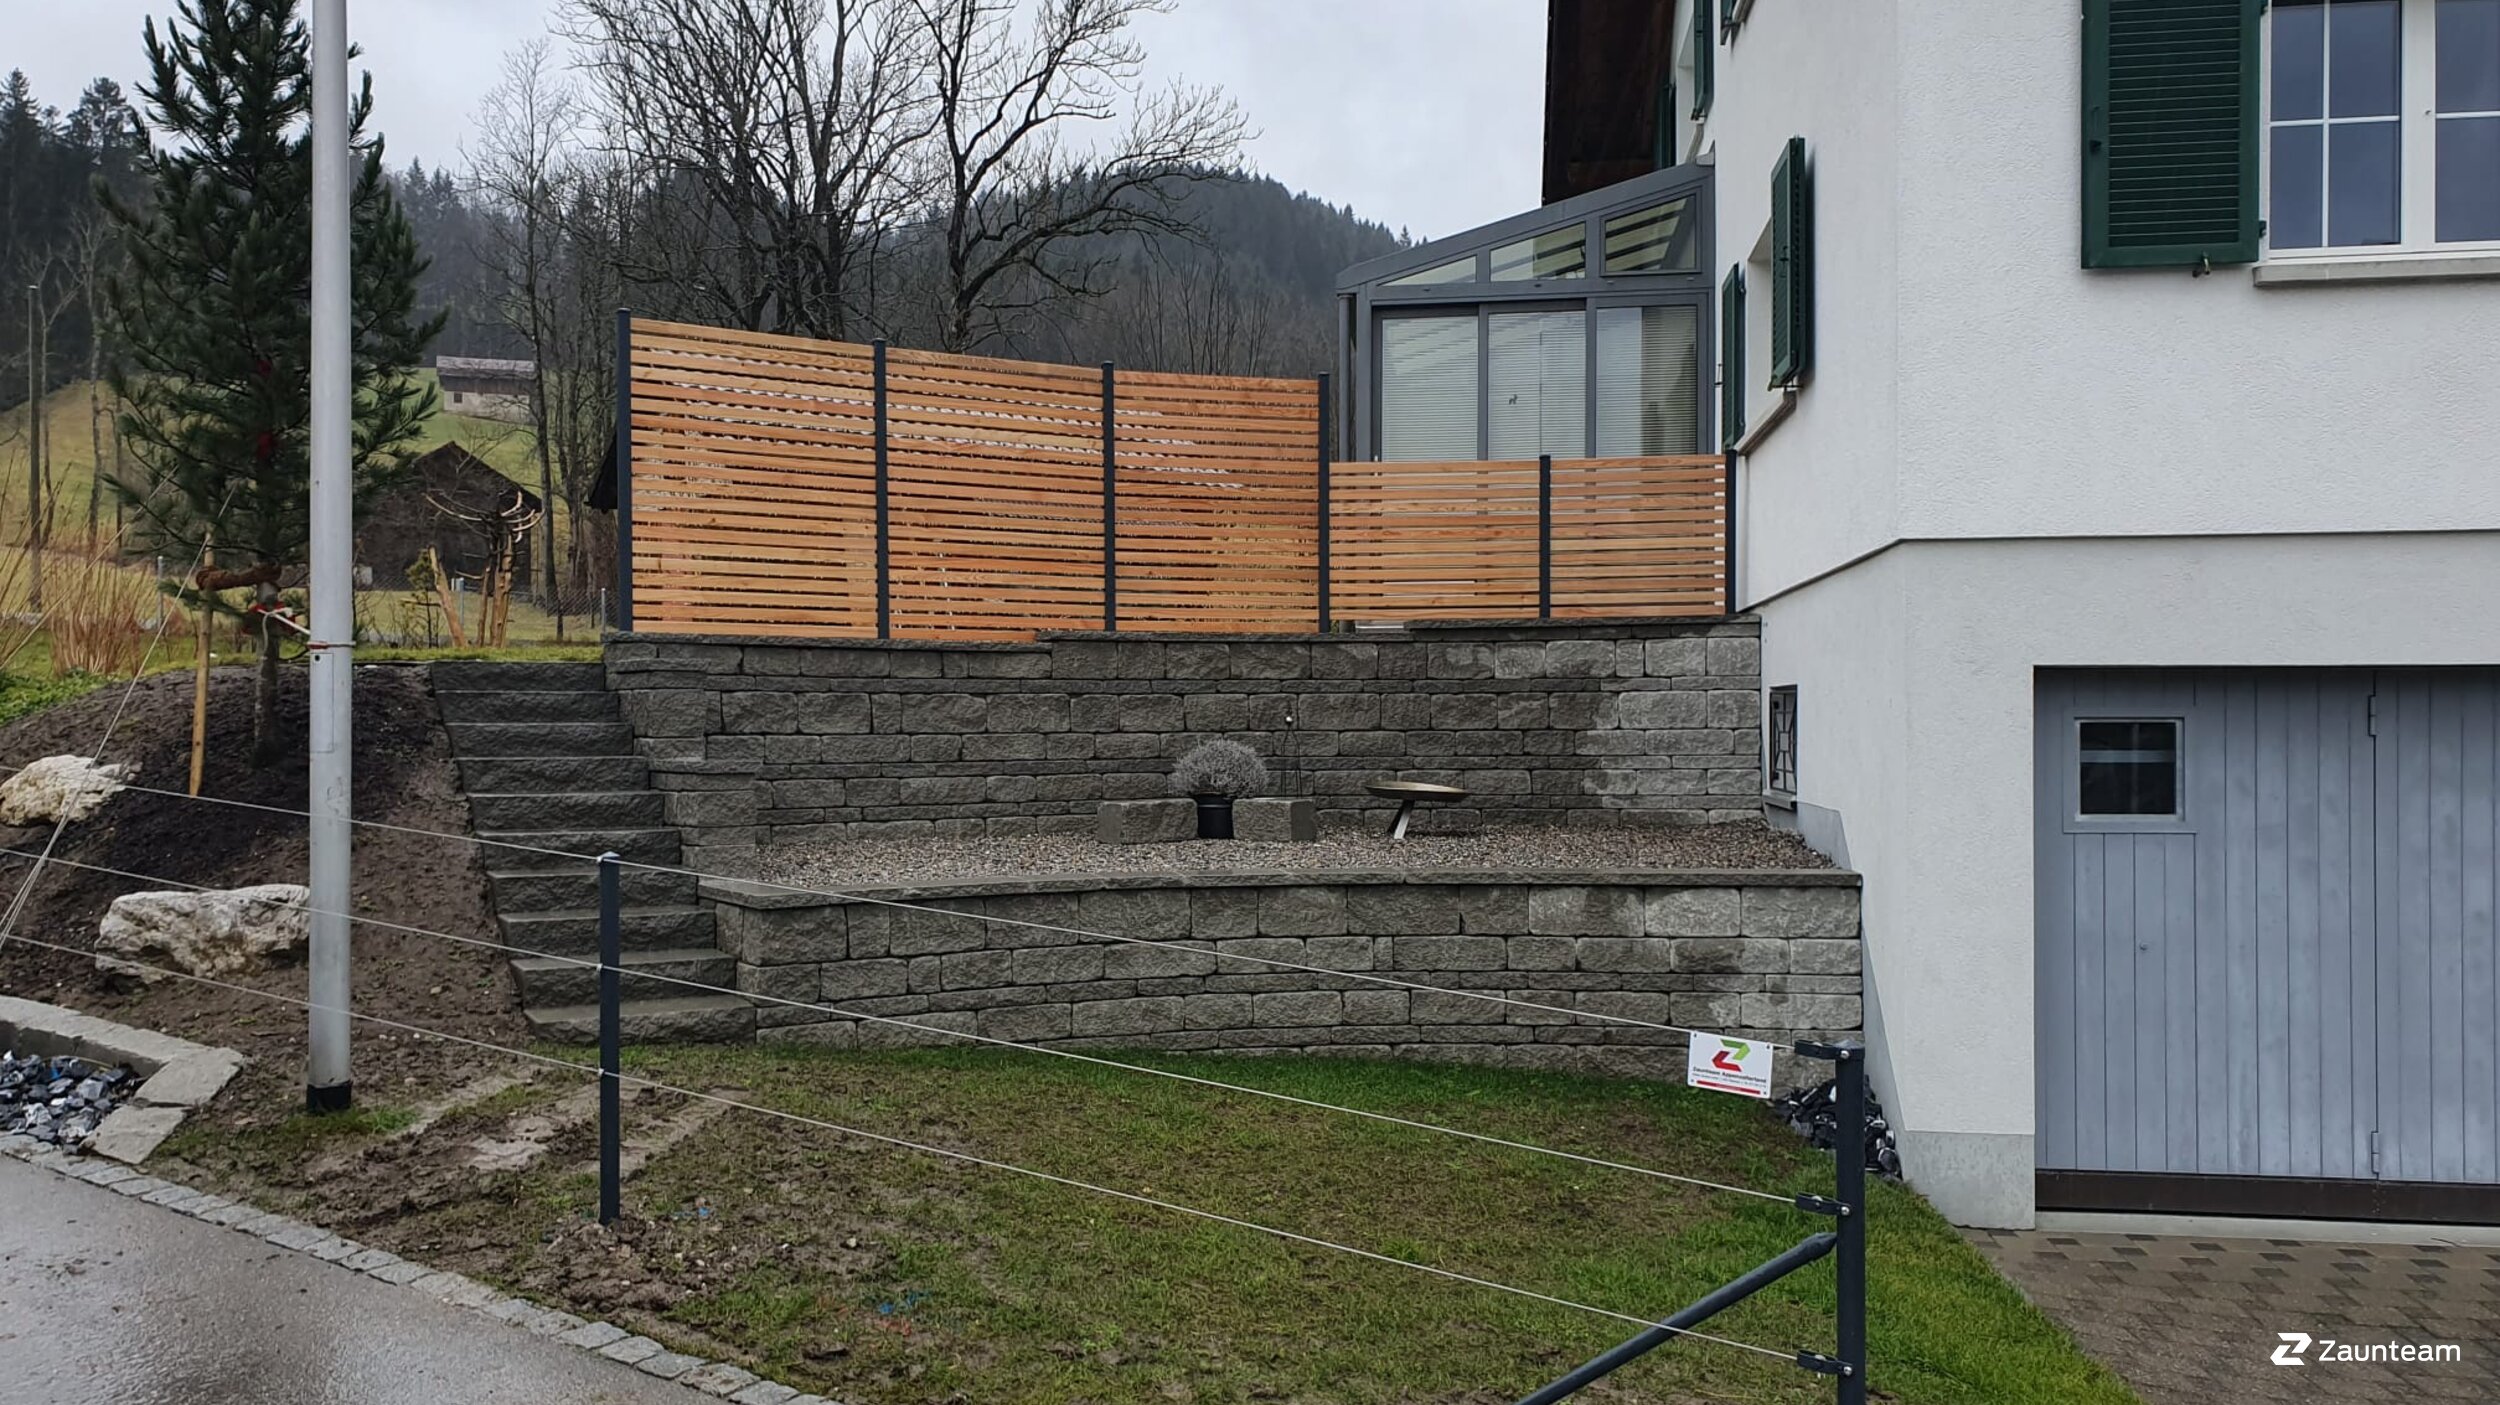 Protection brise-vue en aluminium de 2020 à 9050 Appenzell Suisse de Zaunteam Appenzellerland.